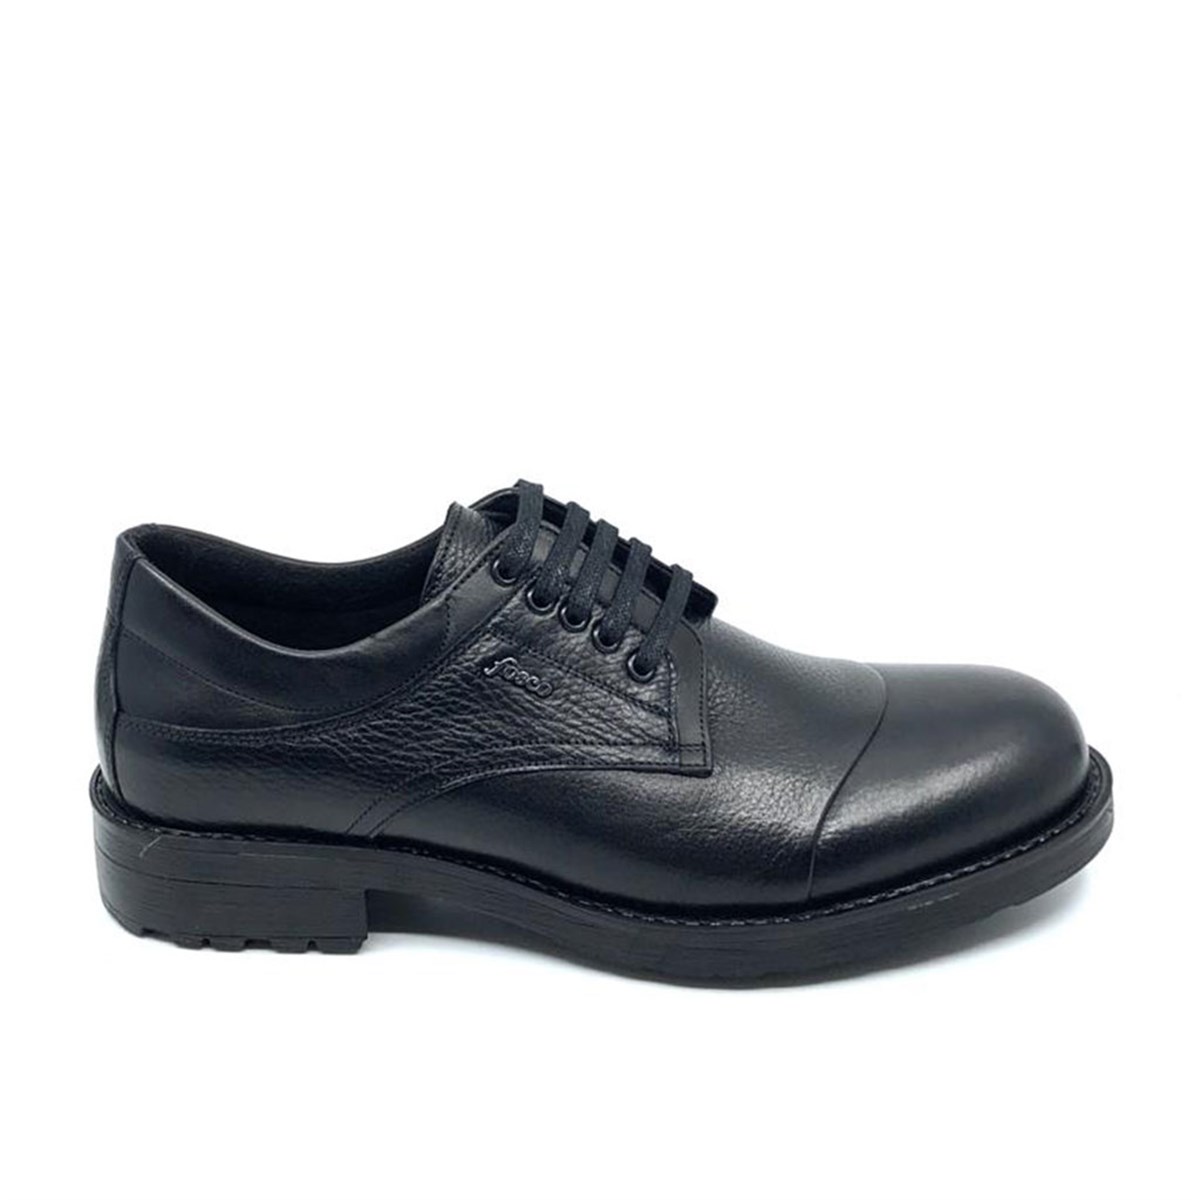 Siyah Hakiki Deri Kauçuk Taban Sıcak Astar Kışlık Erkek Ayakkabı 7520 551  600 - Fosco